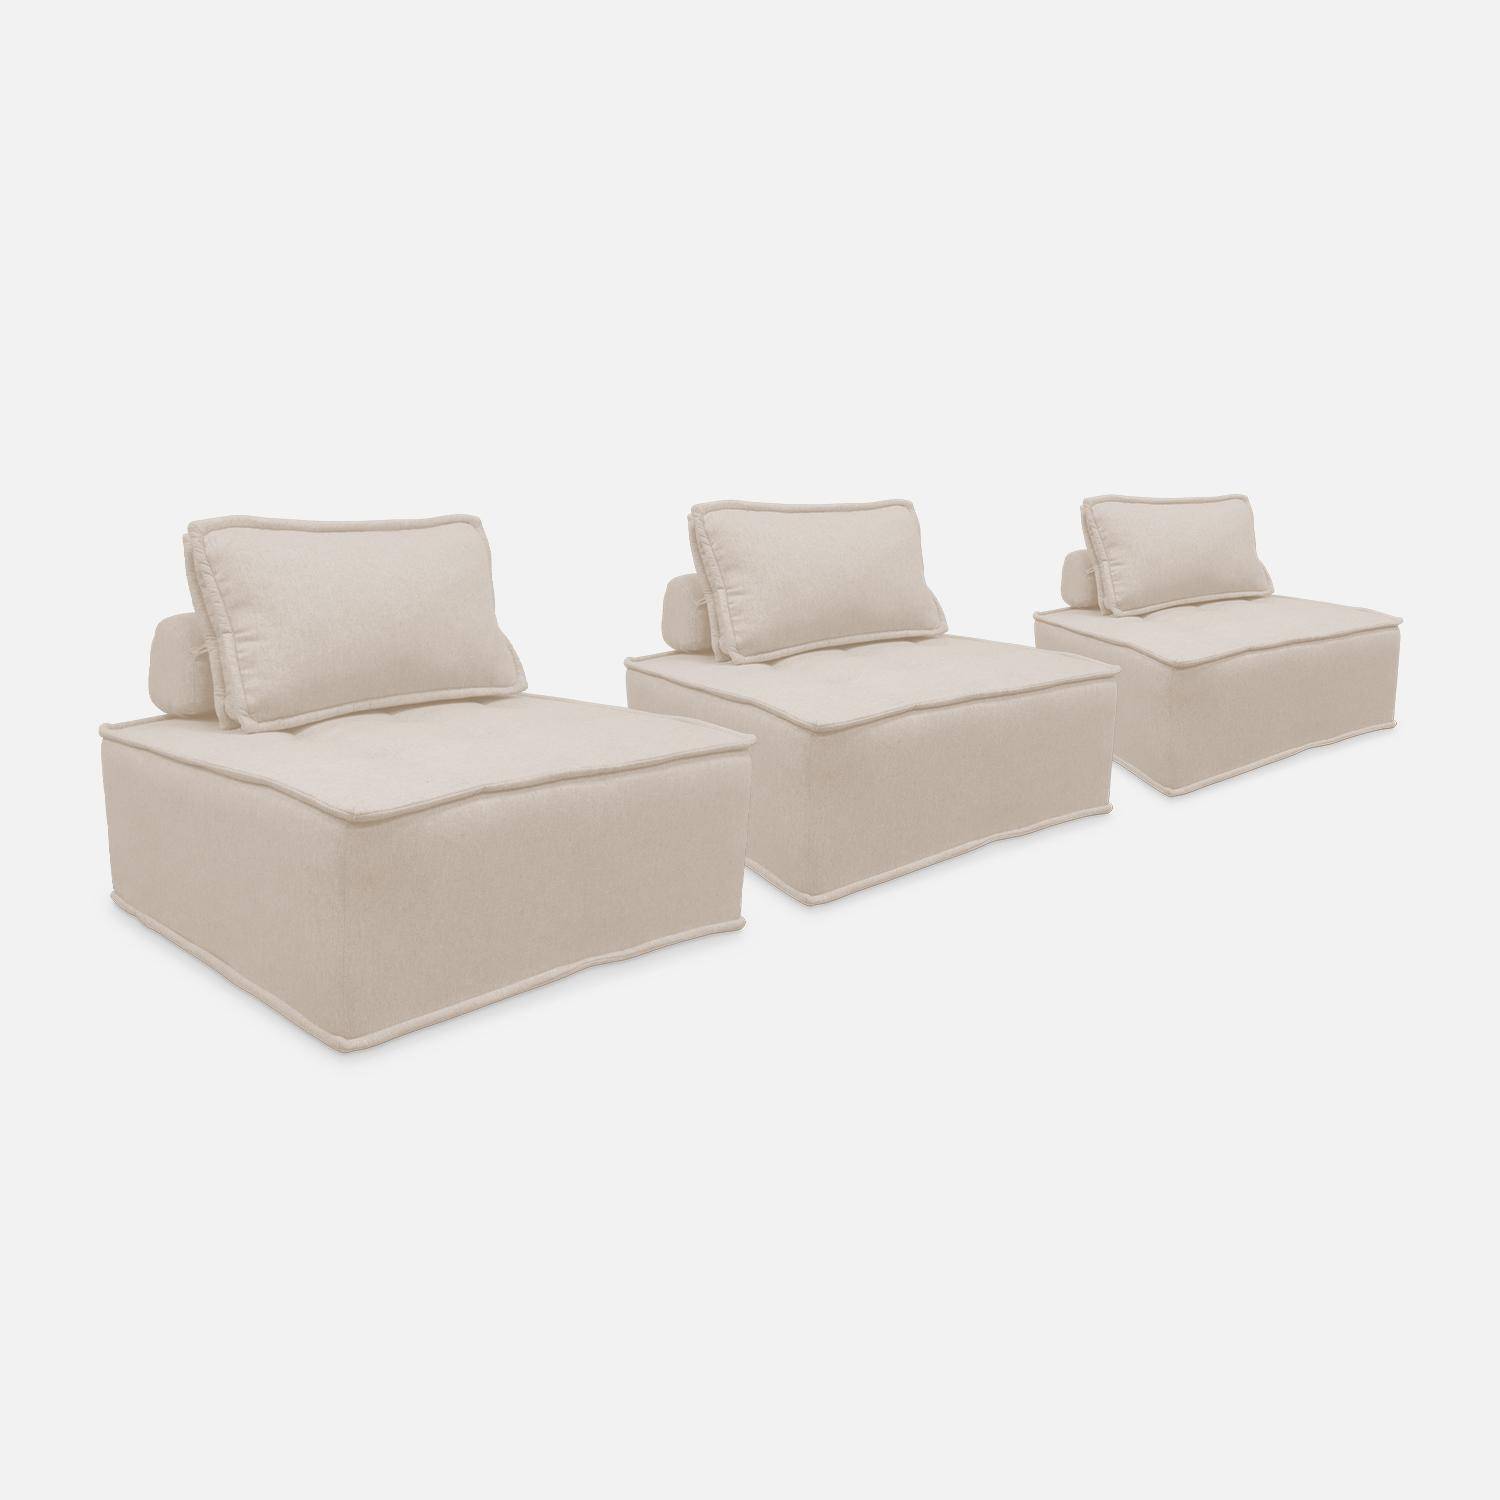 Set van 3 modulaire fauteuils in crème stof met 1 kussen Photo4